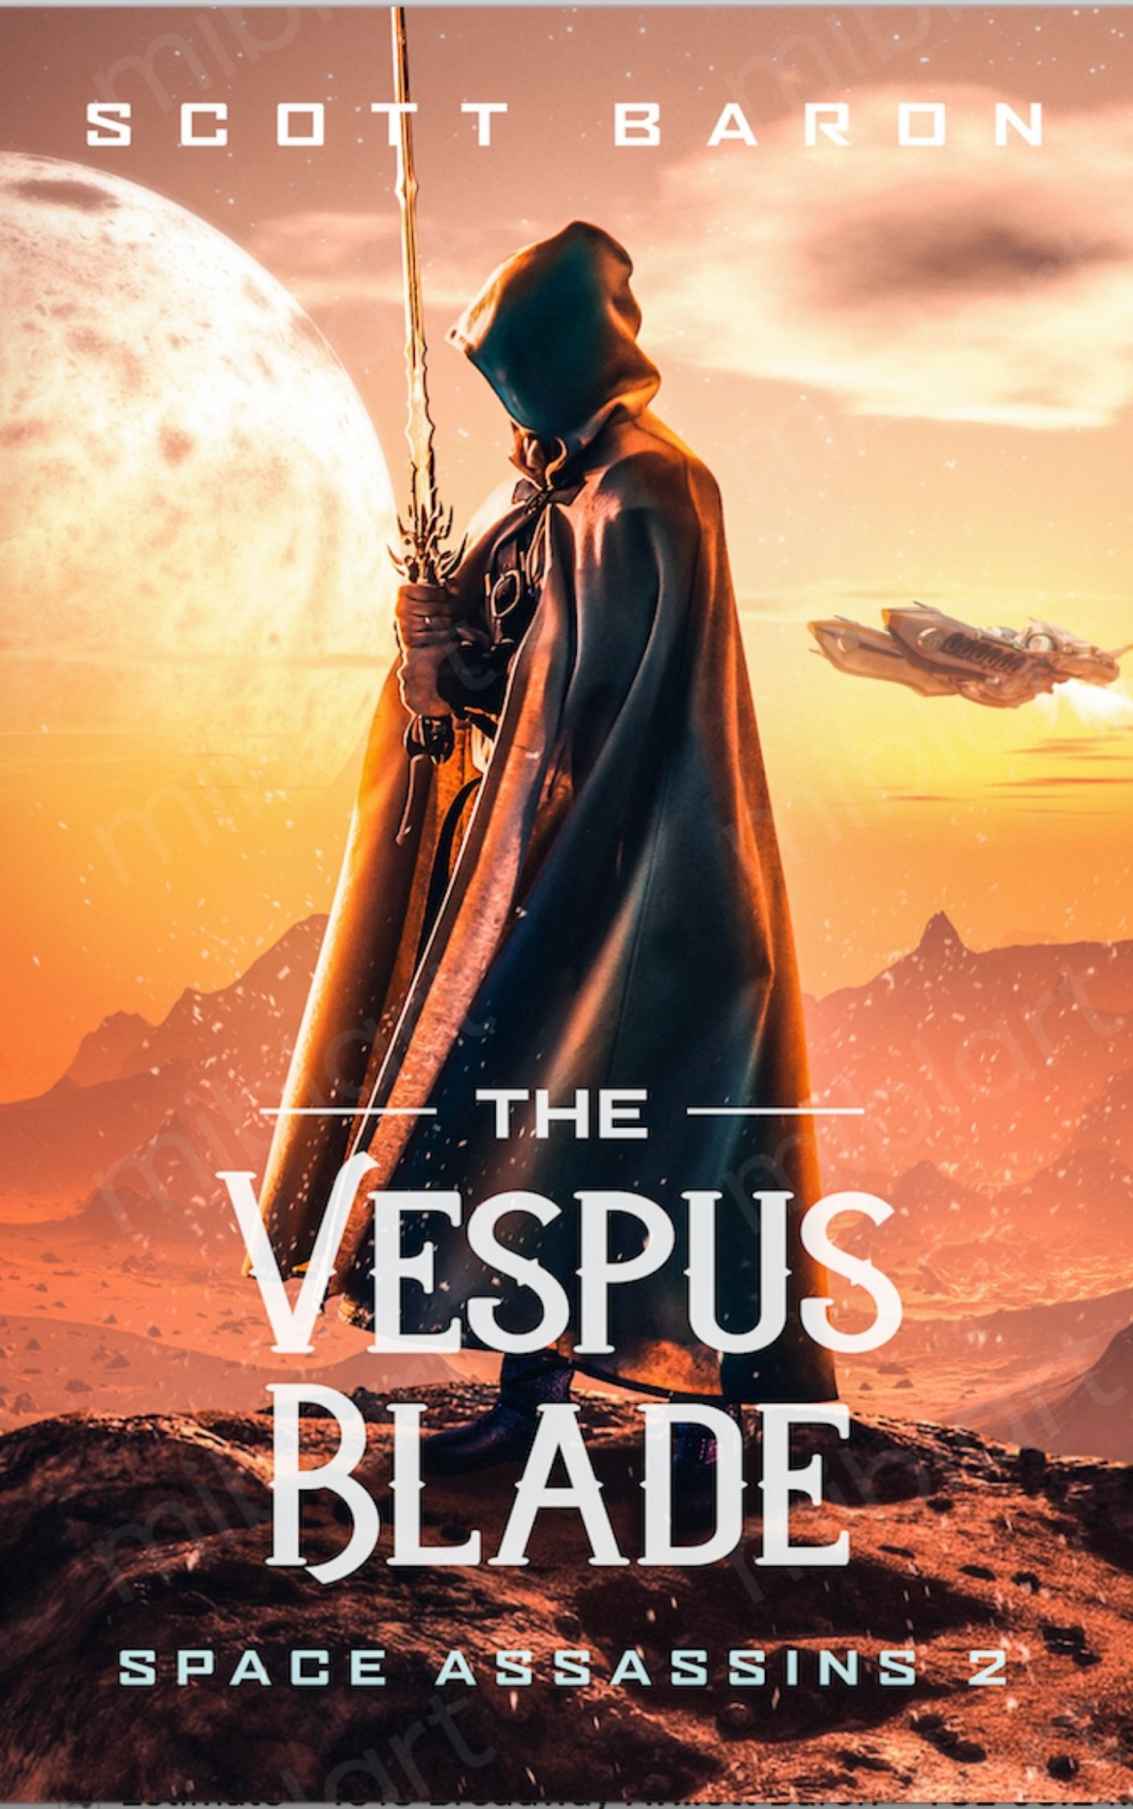 The Vespus Blade